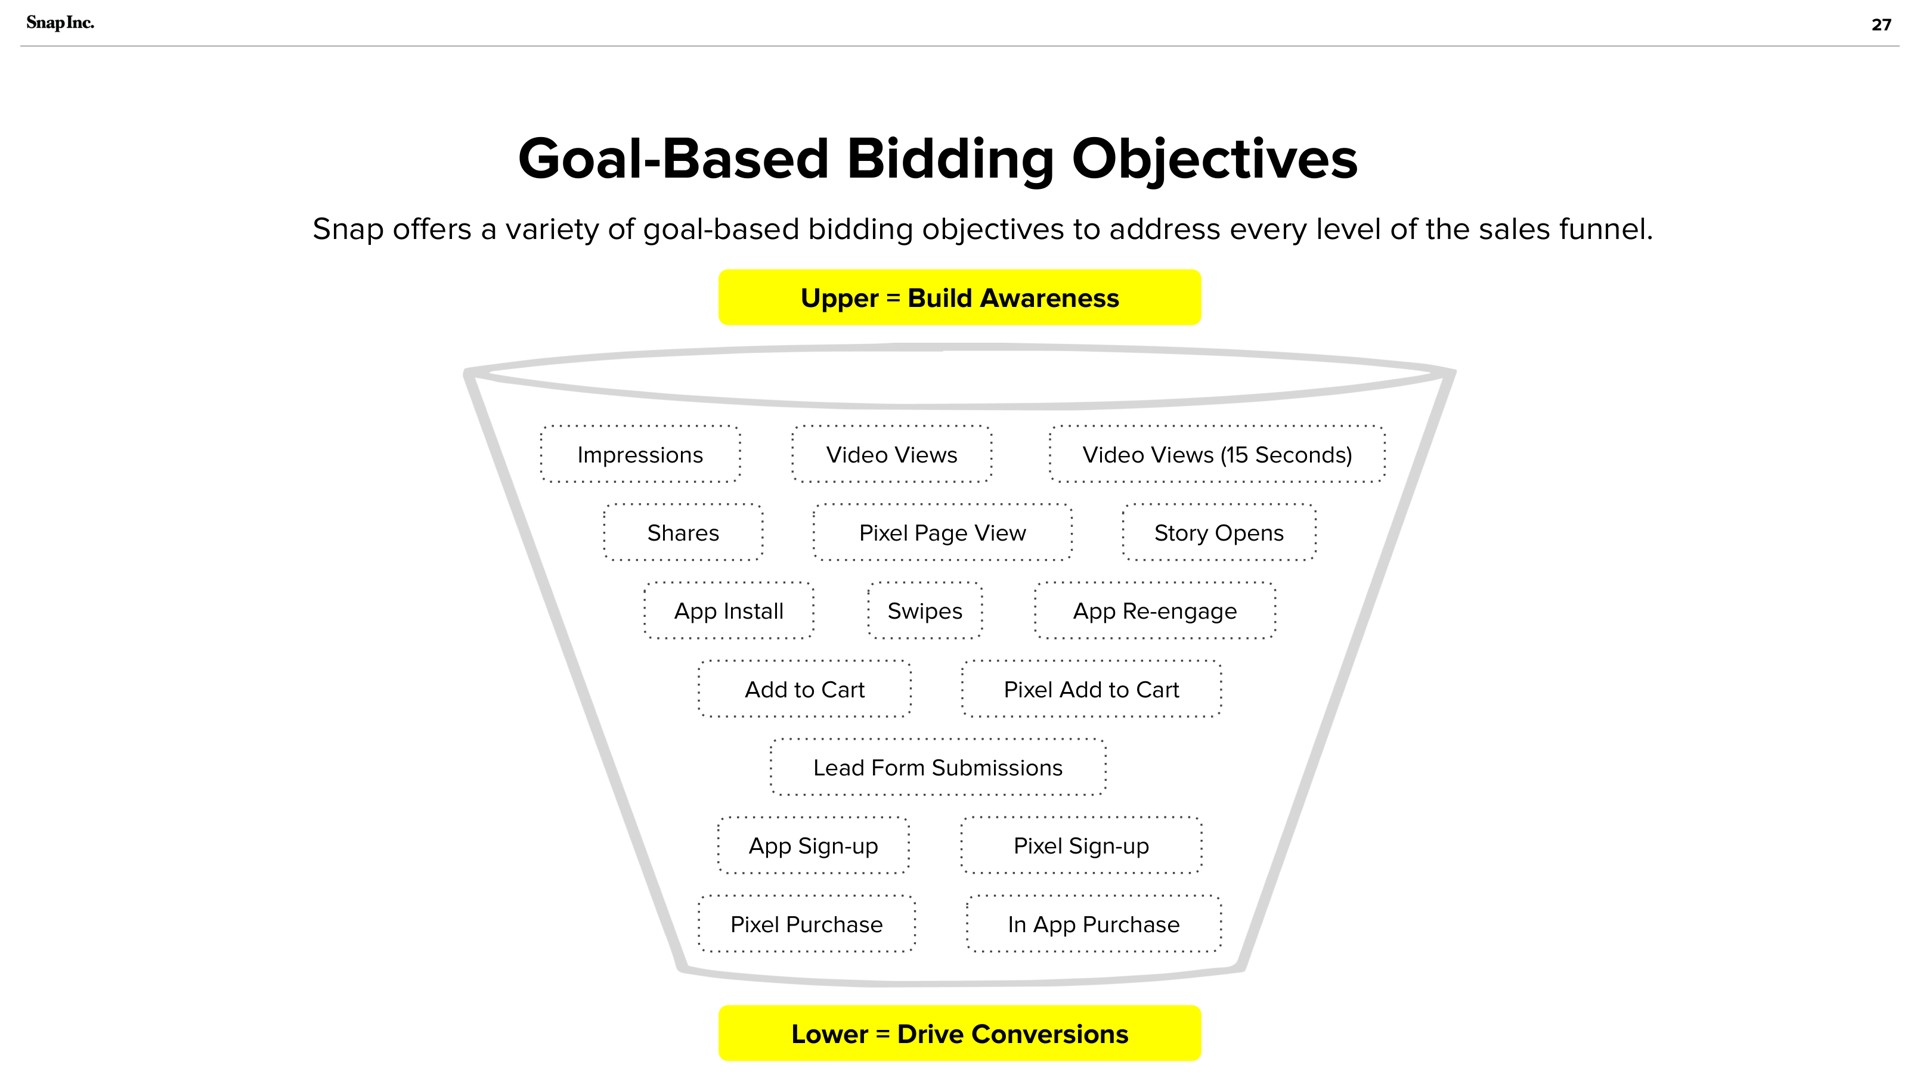 goal based bidding objectives swipes engage | Snap Inc